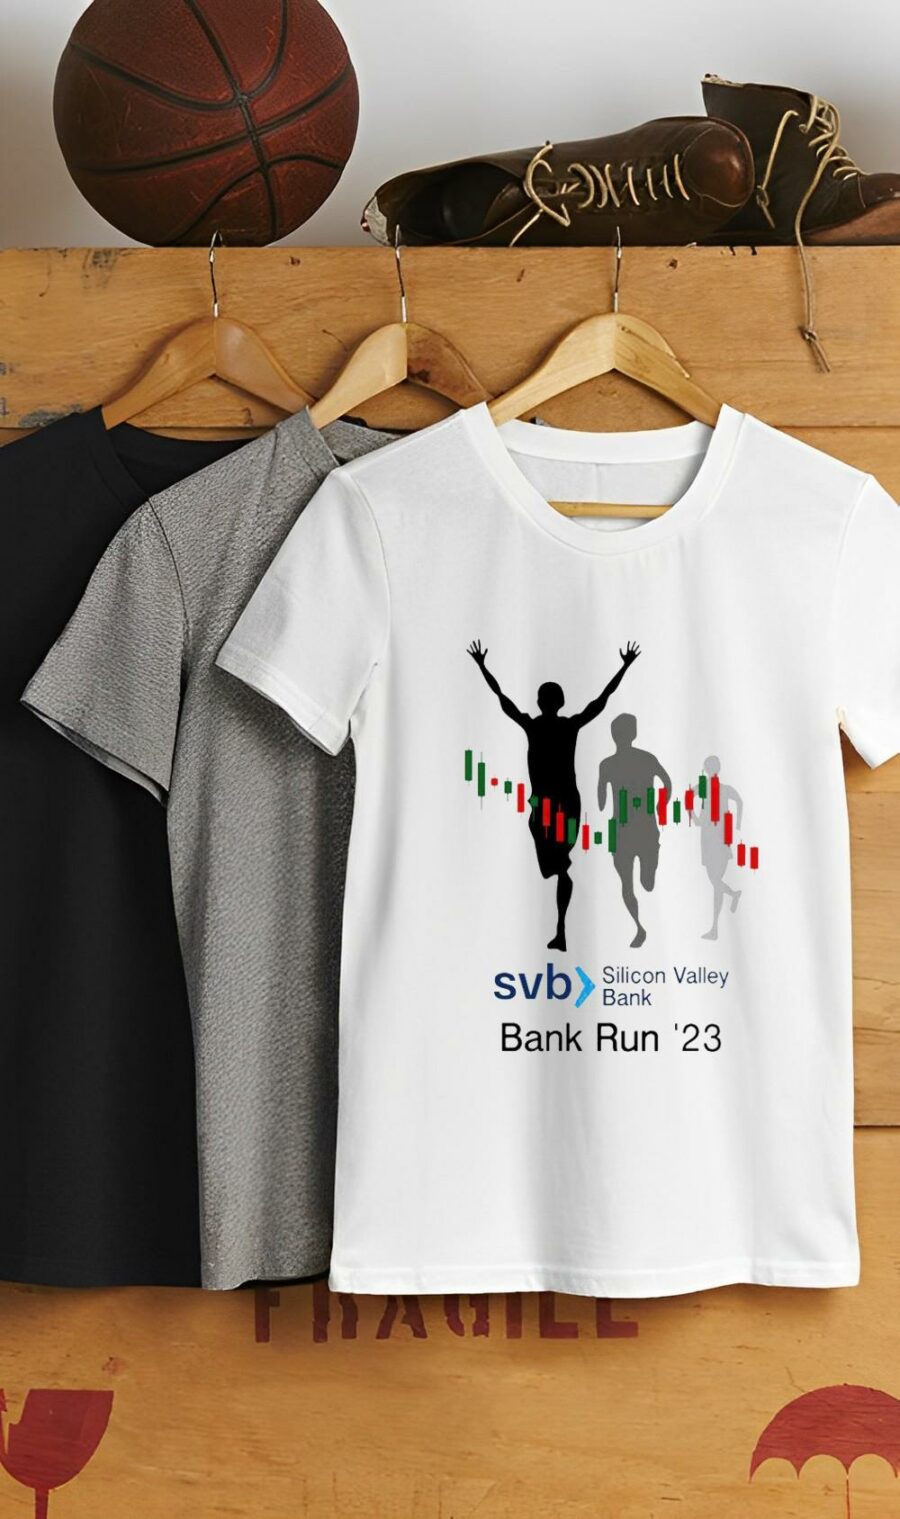 svb silicon valley bank run 23 shirt